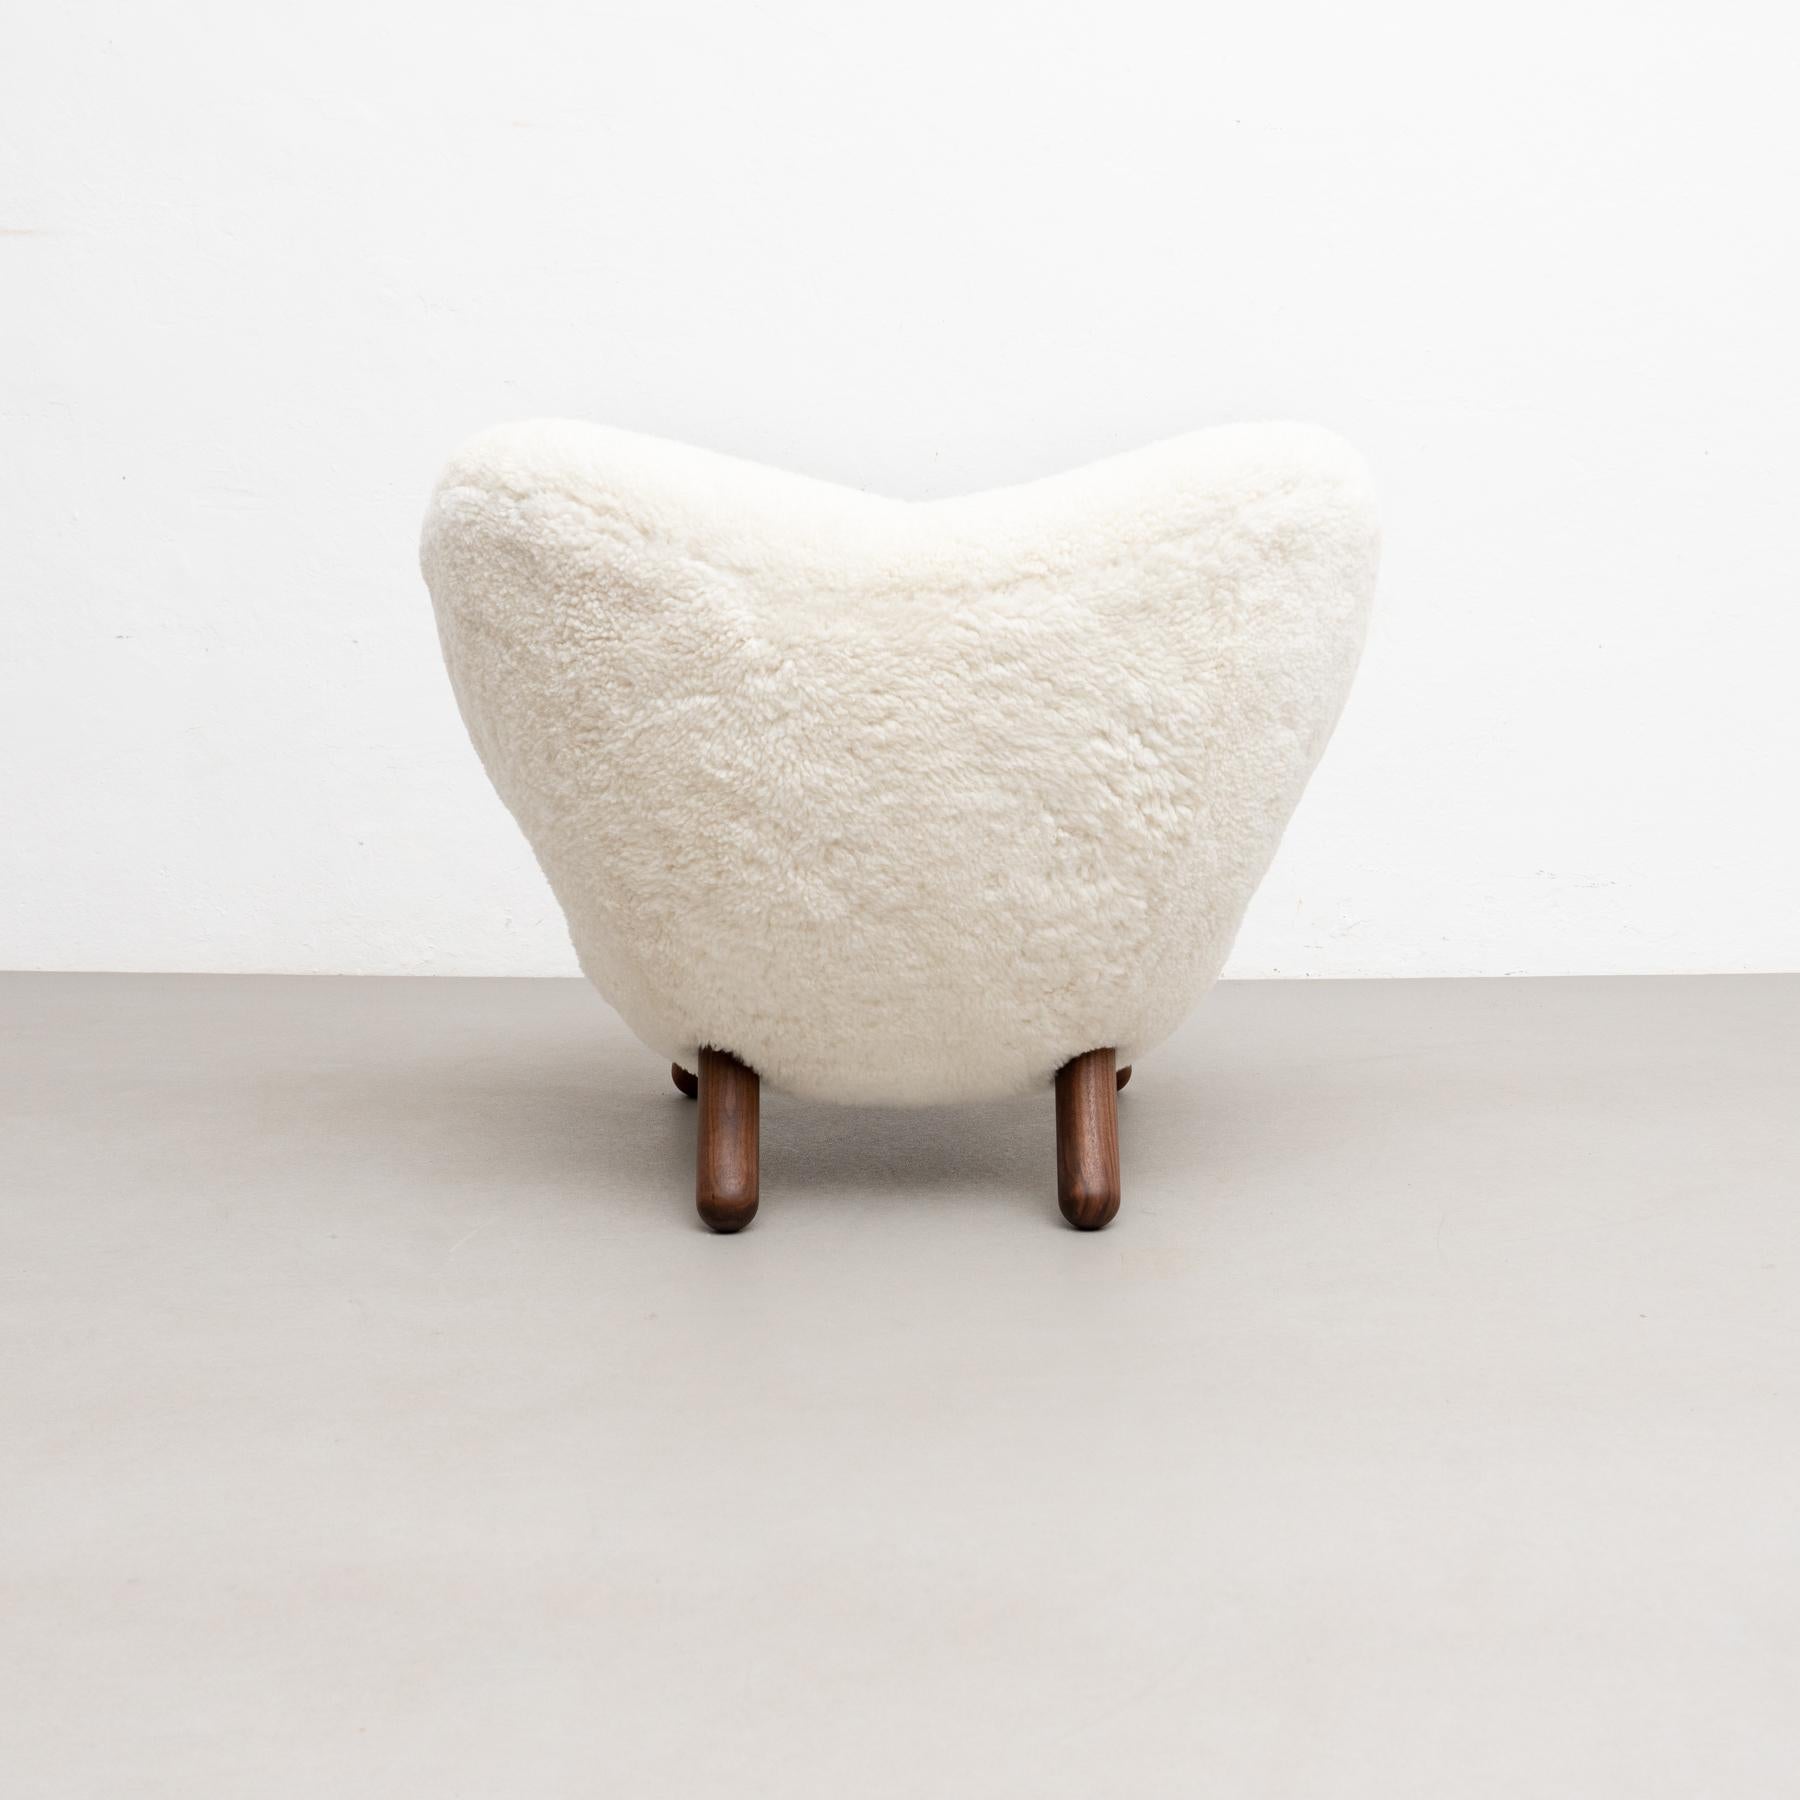 Finn Juhl Pelican Chair Upholstered in Offwhite Sheepskin For Sale 4